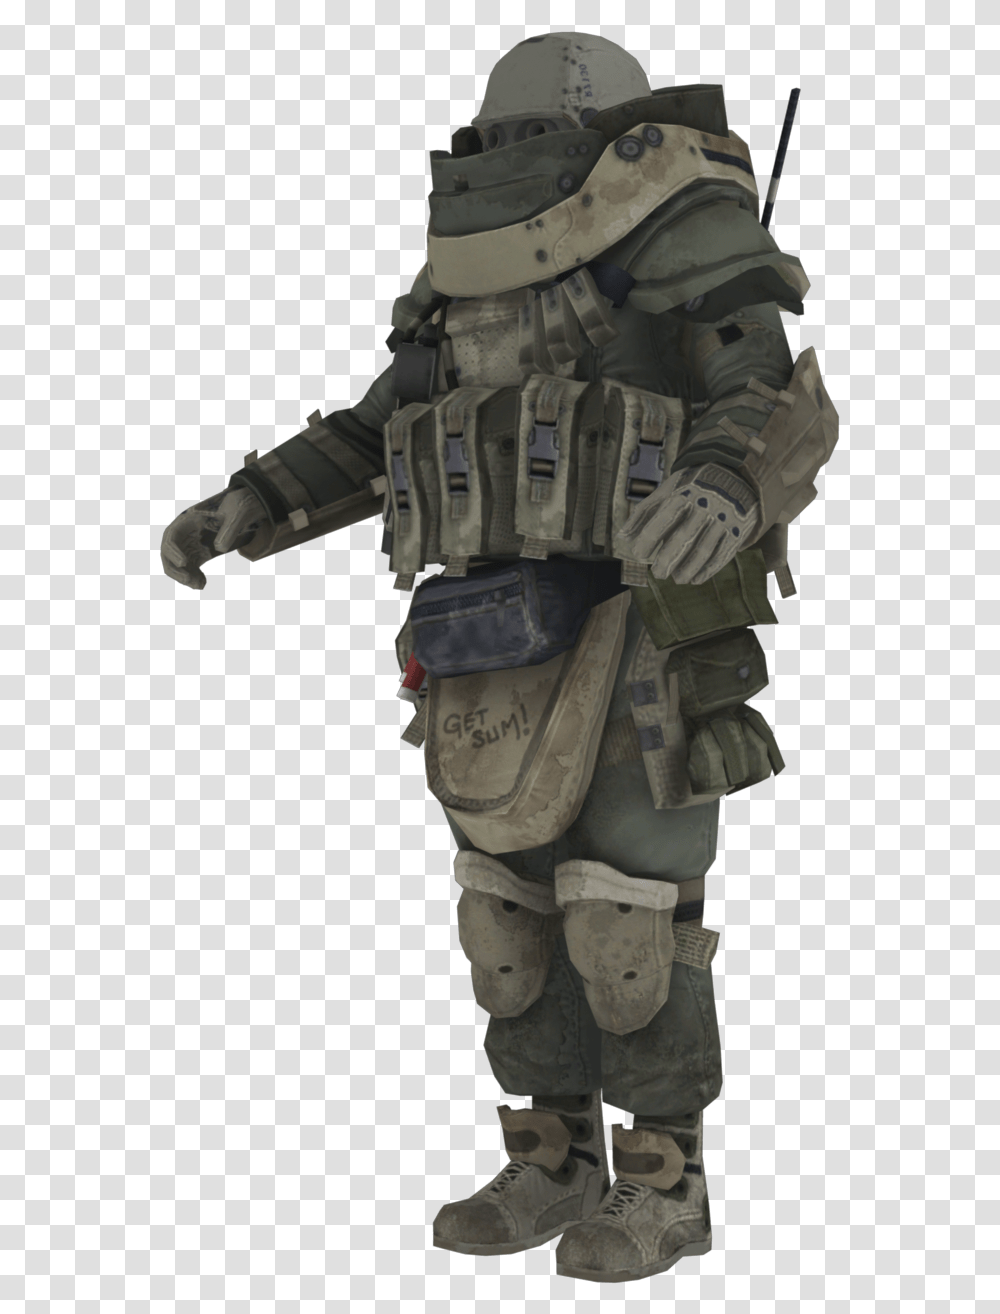 Juggernaut Call Of Duty Modern Warfare, Astronaut, Person, Human, Helmet Transparent Png